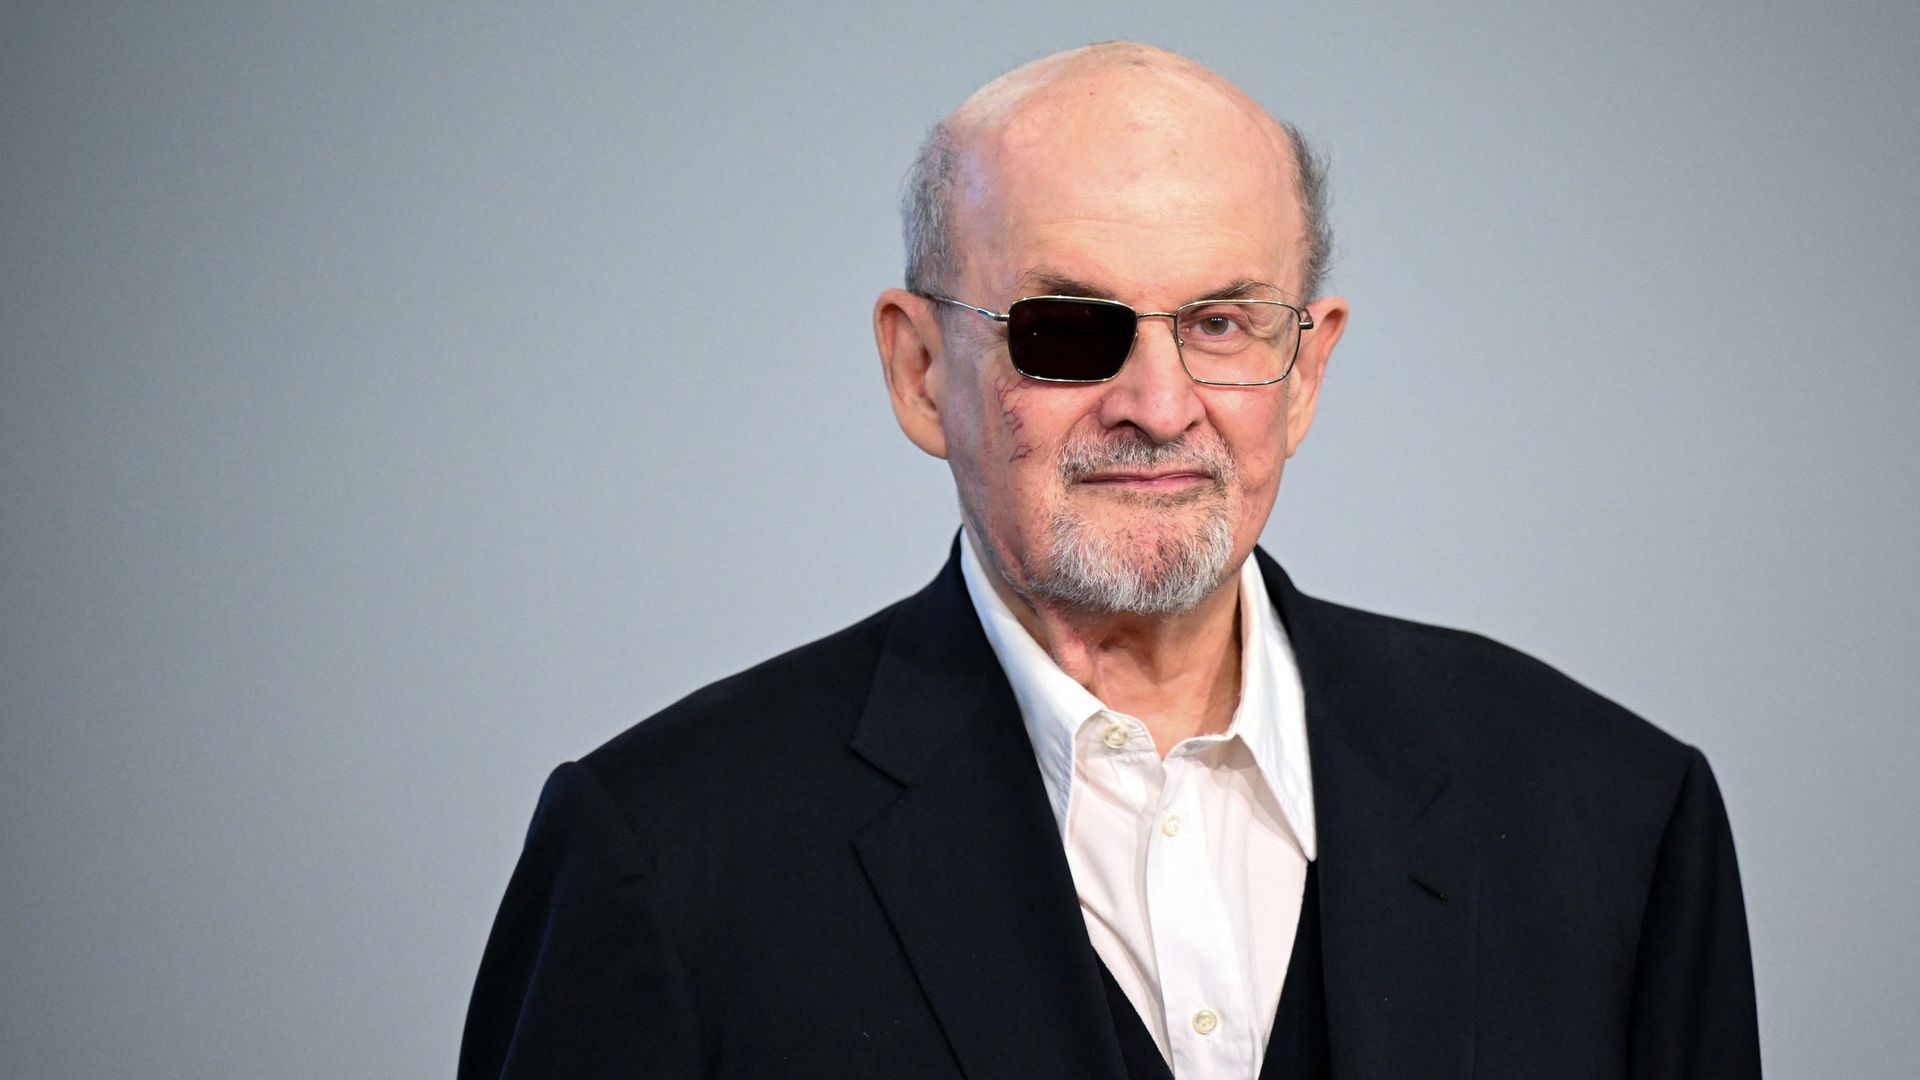 Salman Rushdie témoigne de son agression dans son dernier livre "Le couteau"